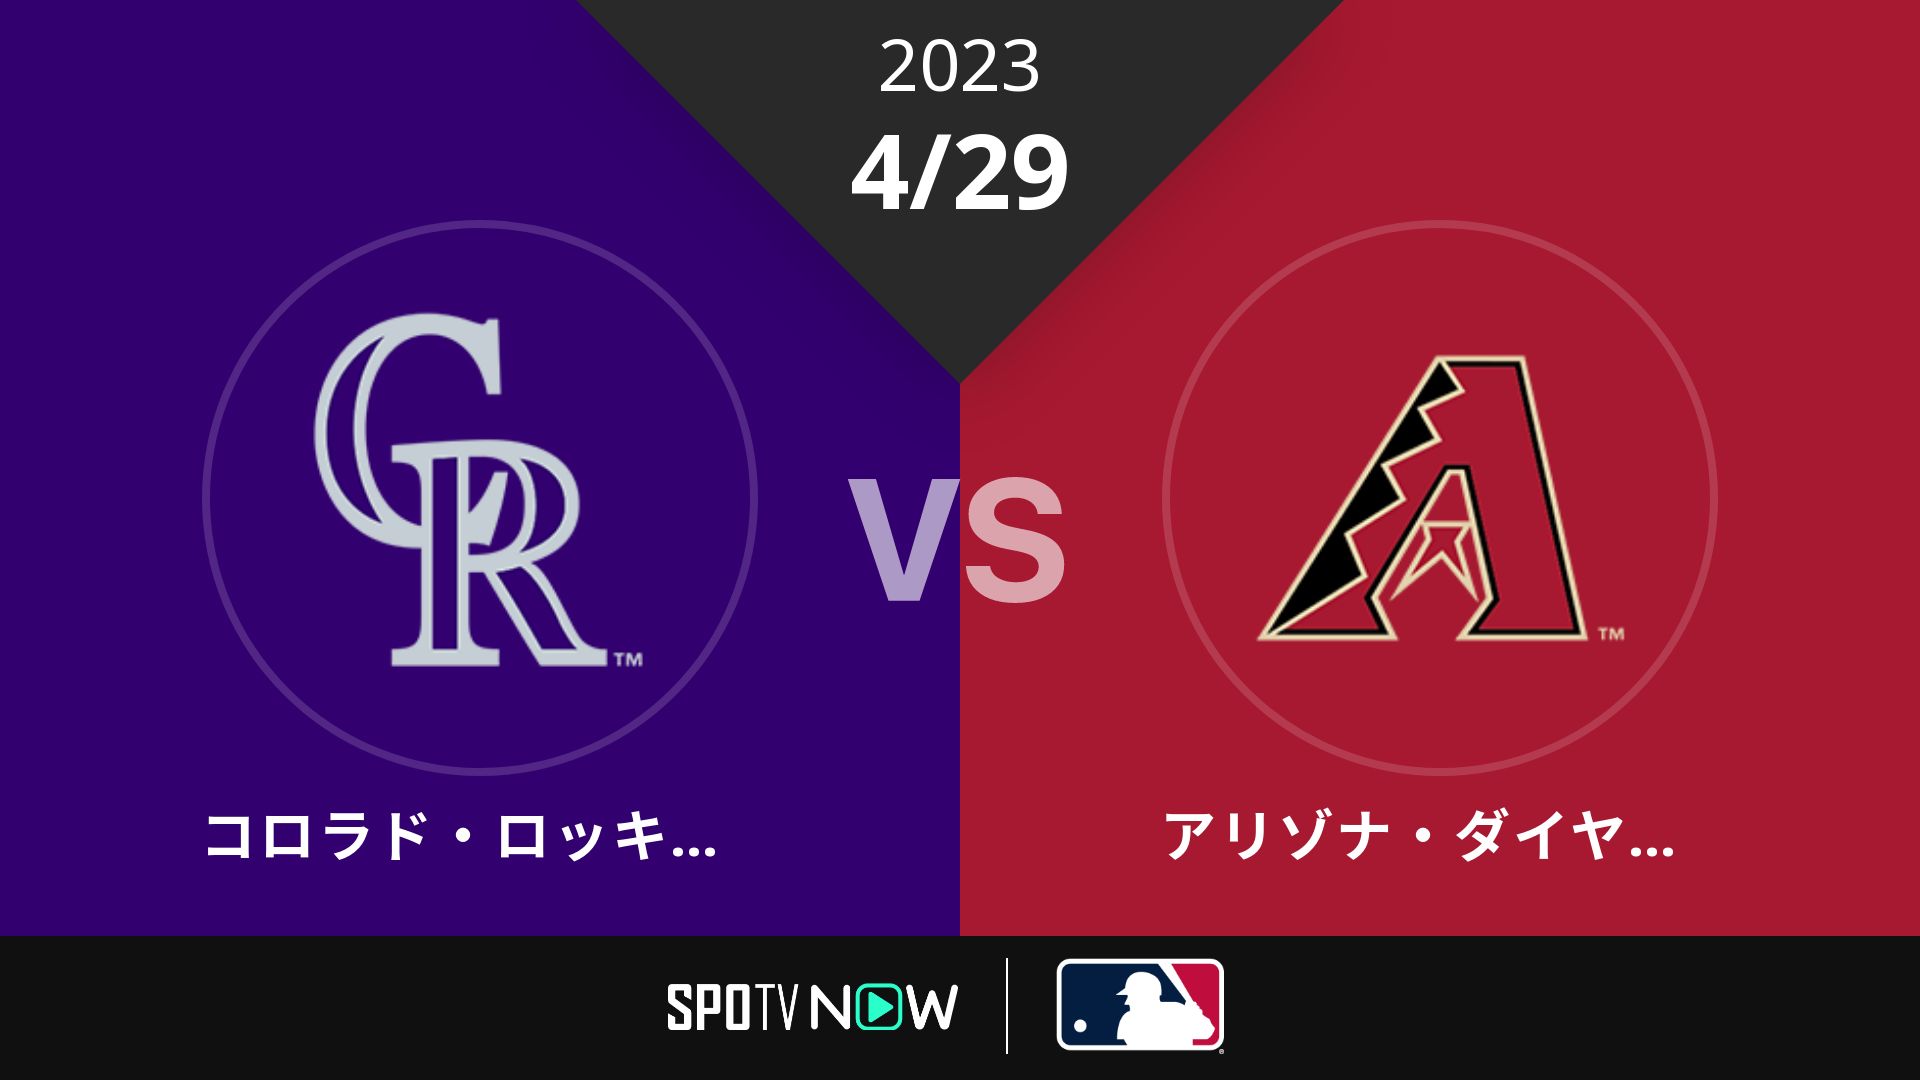 2023/4/29 ロッキーズ vs Dバックス [MLB]